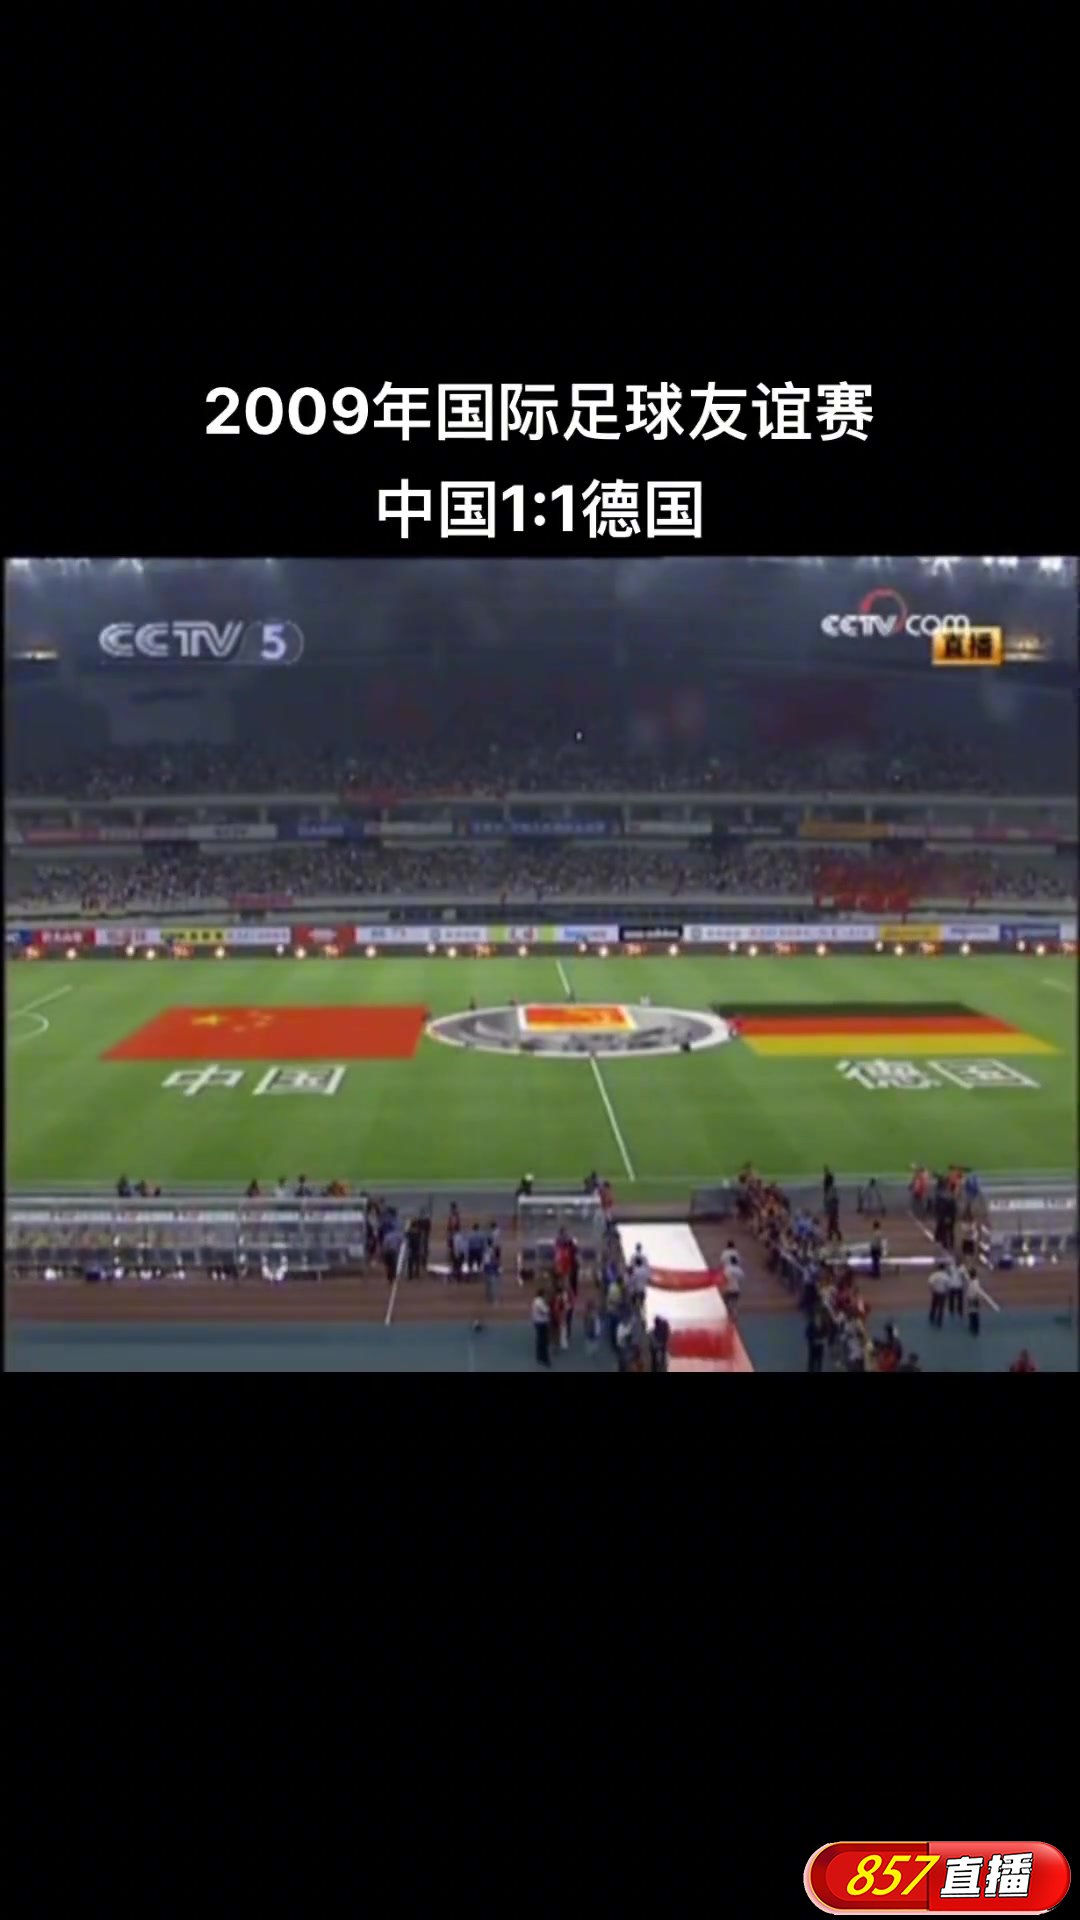 09年足球友谊赛 中国1-1战平半主力德国队！一场高质量的比赛！